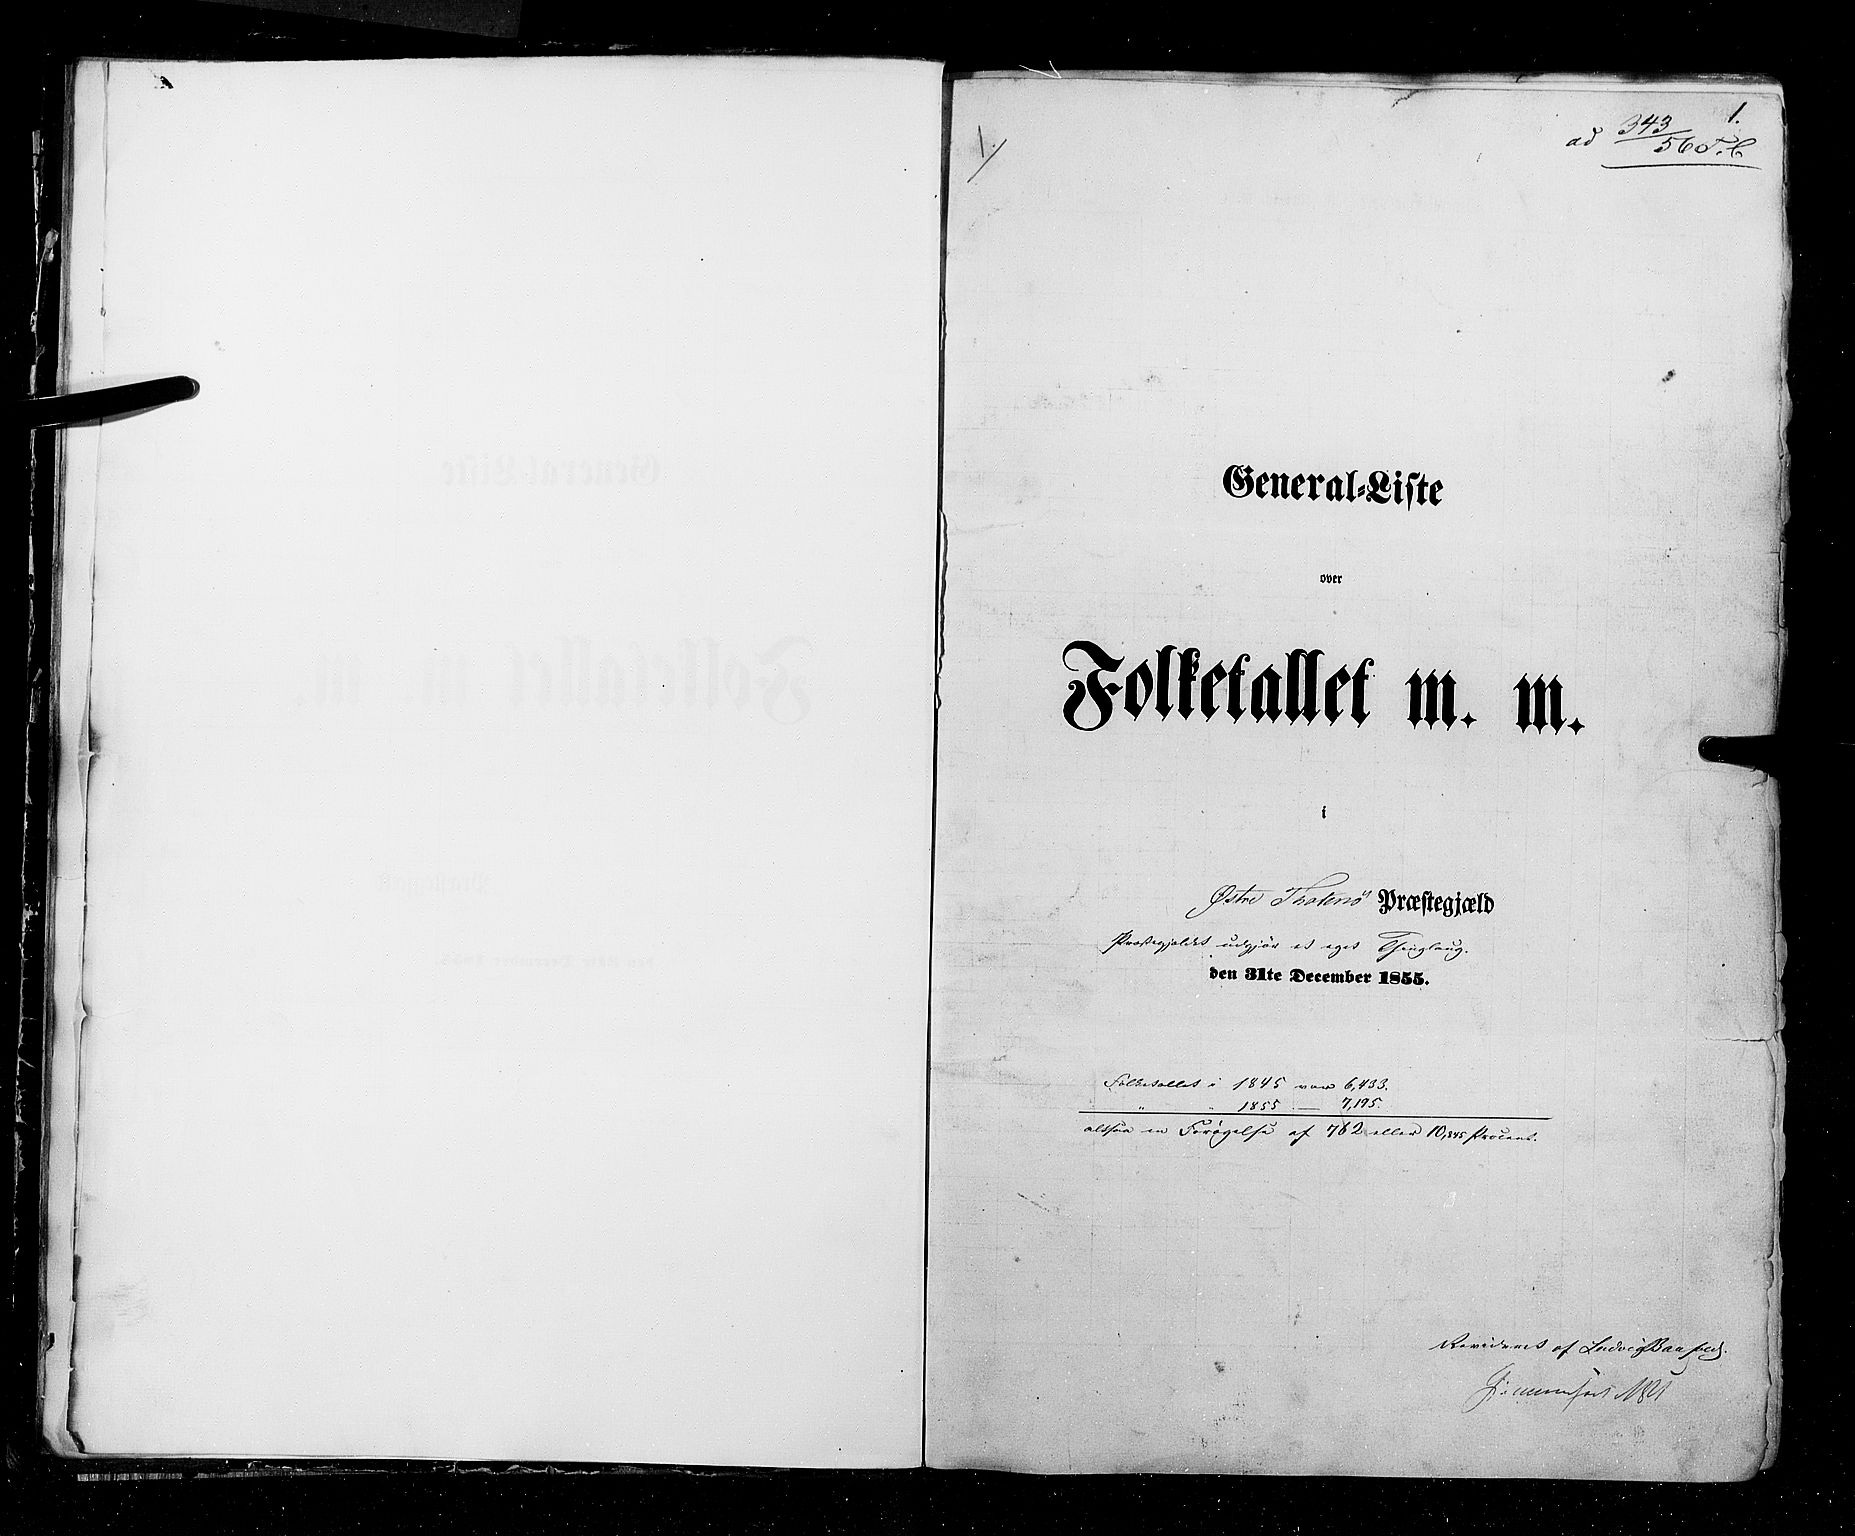 RA, Census 1855, vol. 2: Kristians amt, Buskerud amt og Jarlsberg og Larvik amt, 1855, p. 1